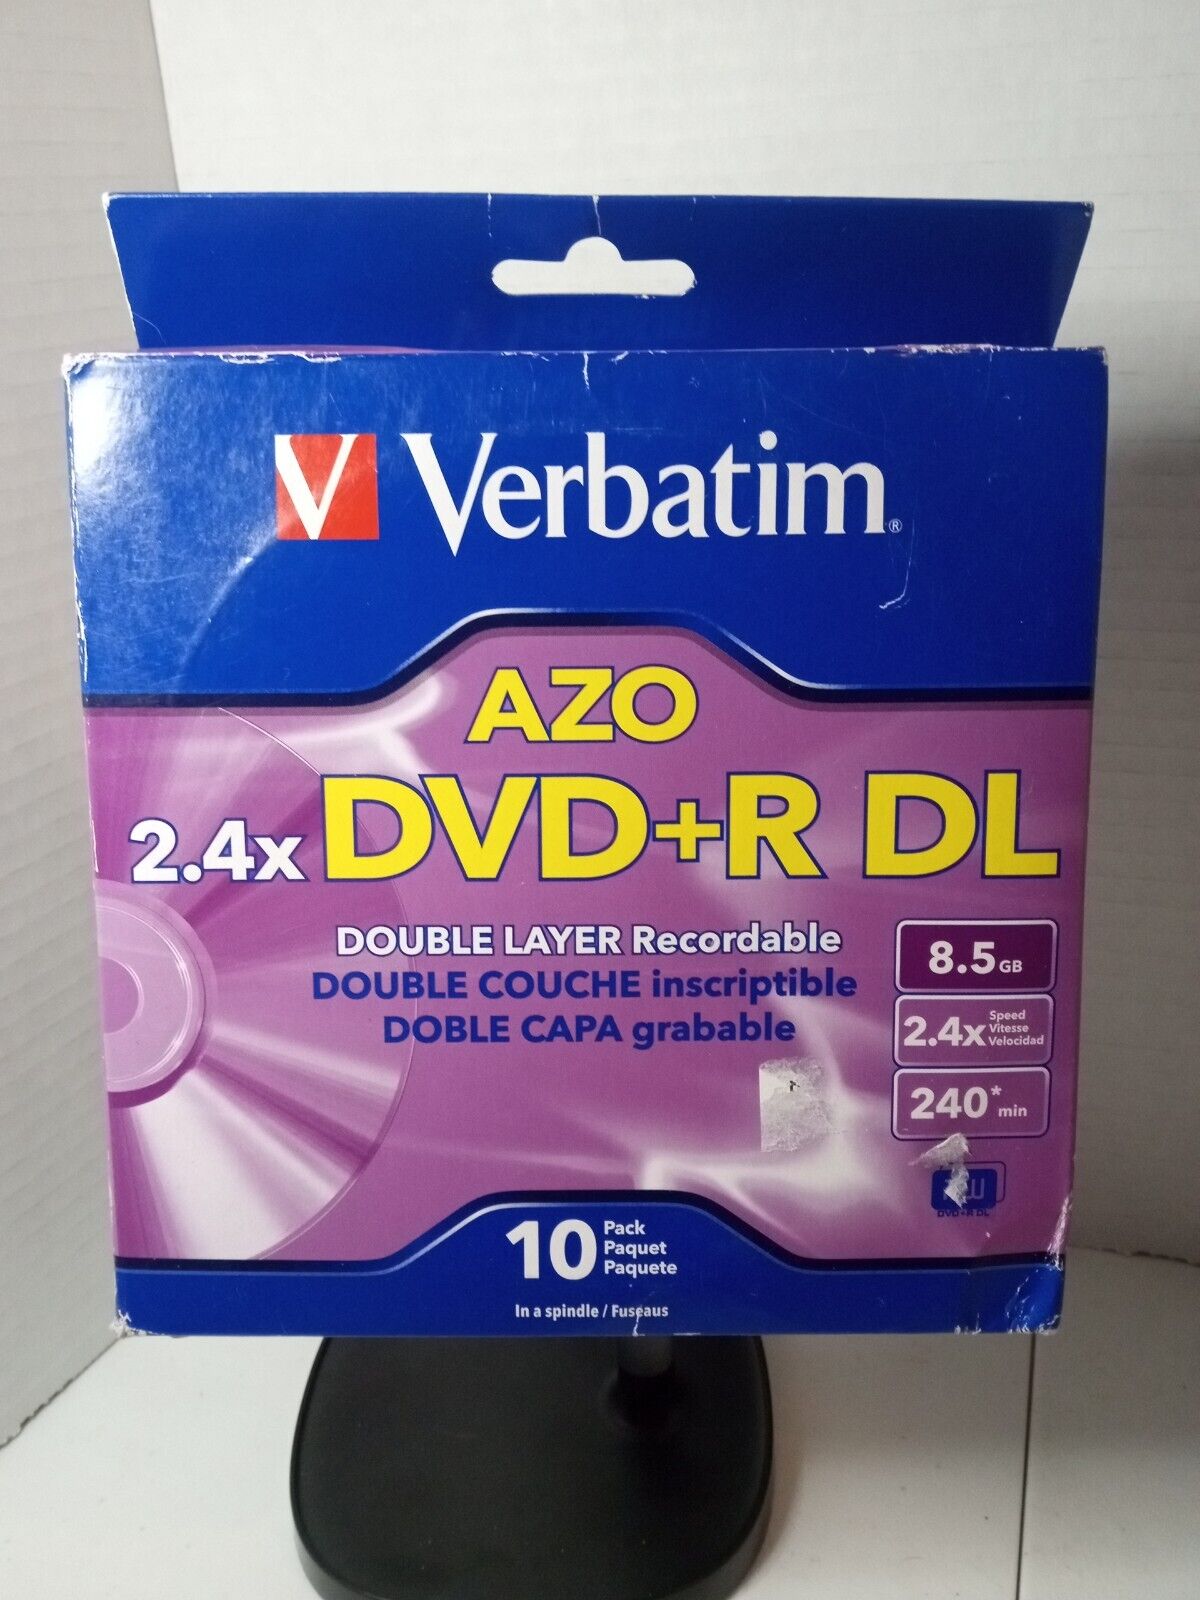 10-pk Verbatim Dual Layer DVD+R  DL - 2.4x 8.5GB 240 mins w AZO